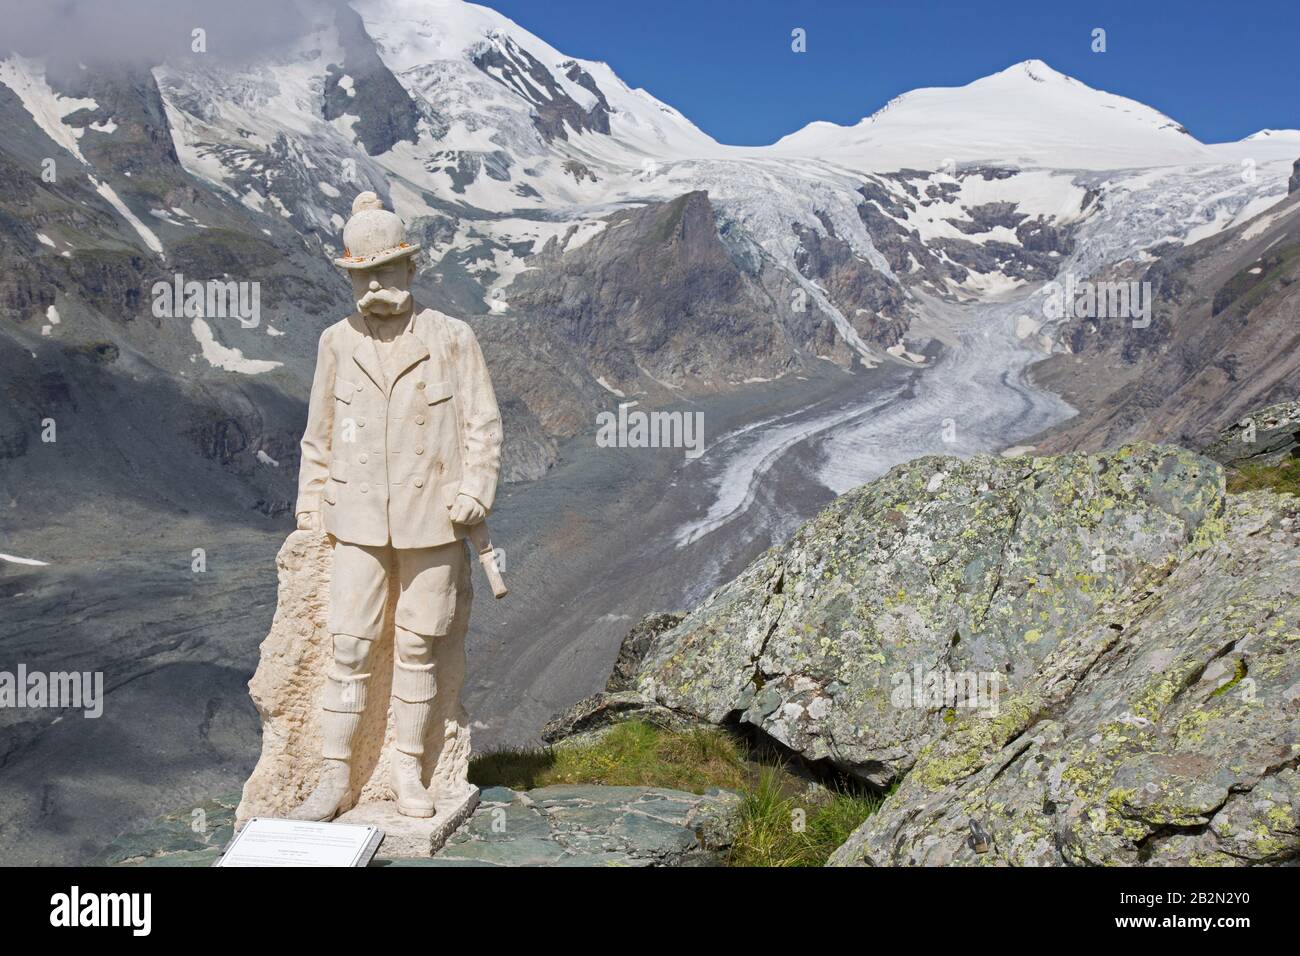 Kaiser Franz Josef scultura e il ritiro Pasterze, il più lungo ghiacciaio in Austria e Alpi orientali nel 2018, Hohe Tauern NP, Carinzia, Austria Foto Stock